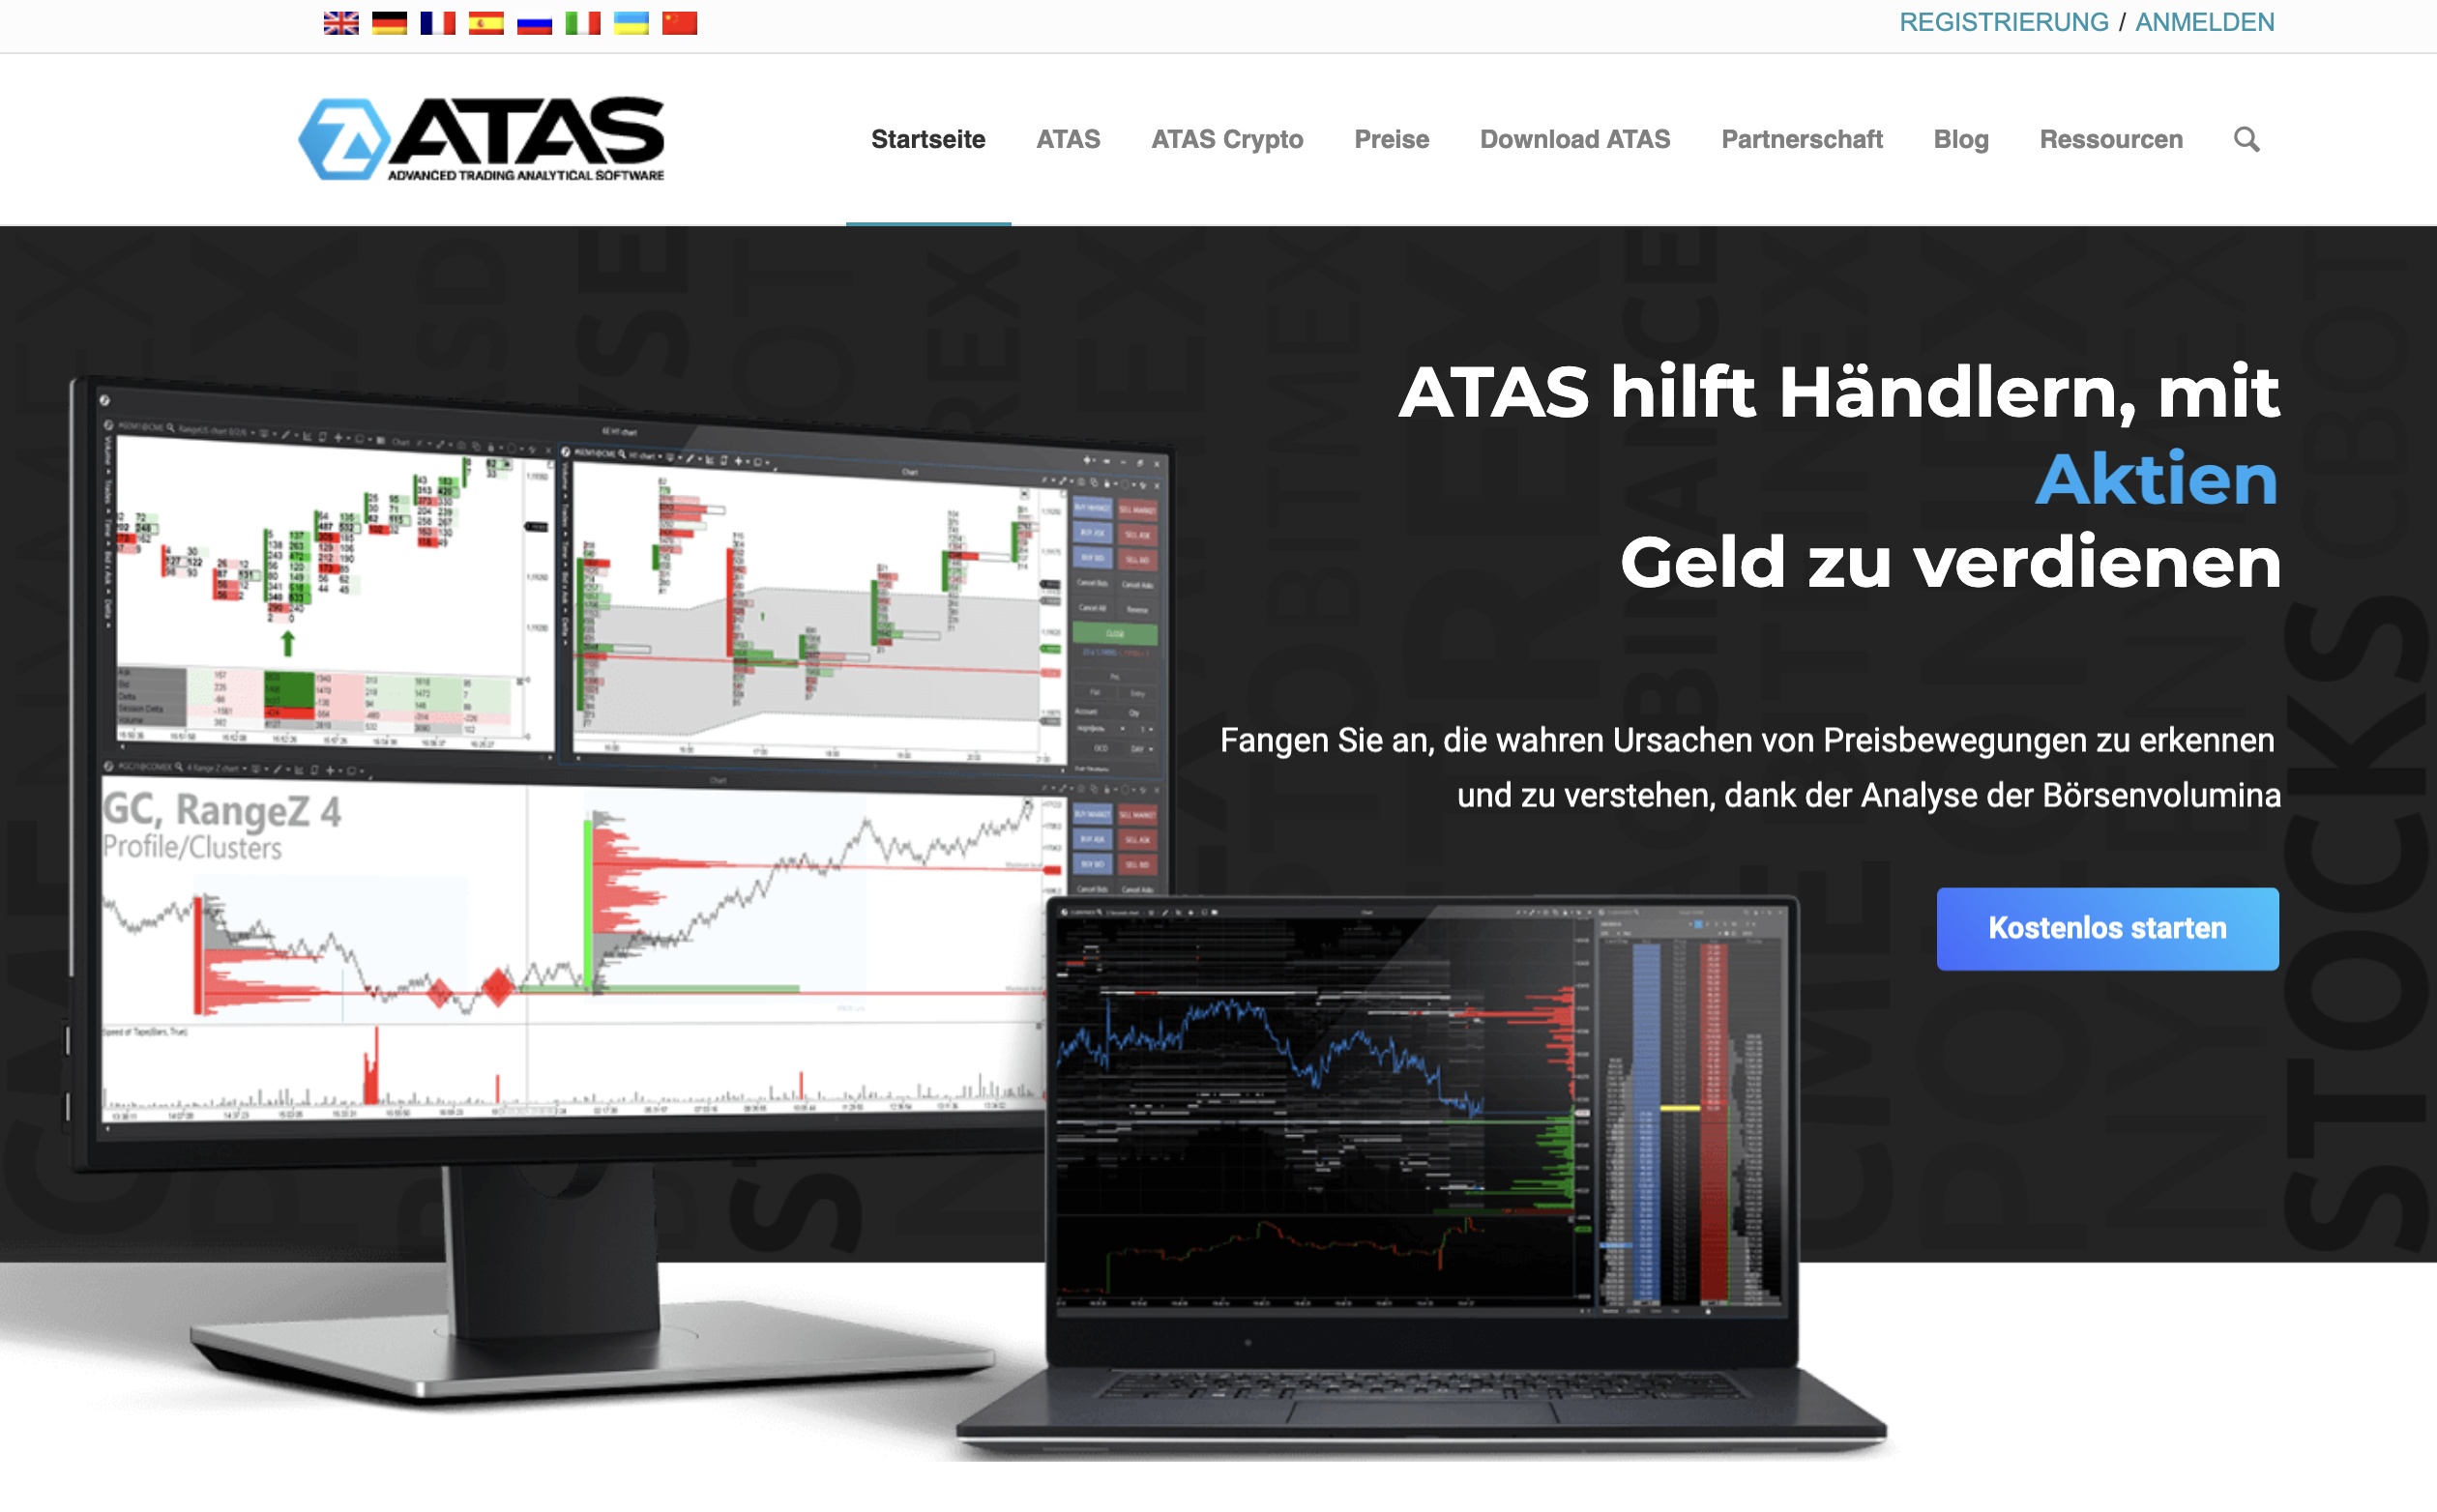 Die offizielle Webseite von ATAS